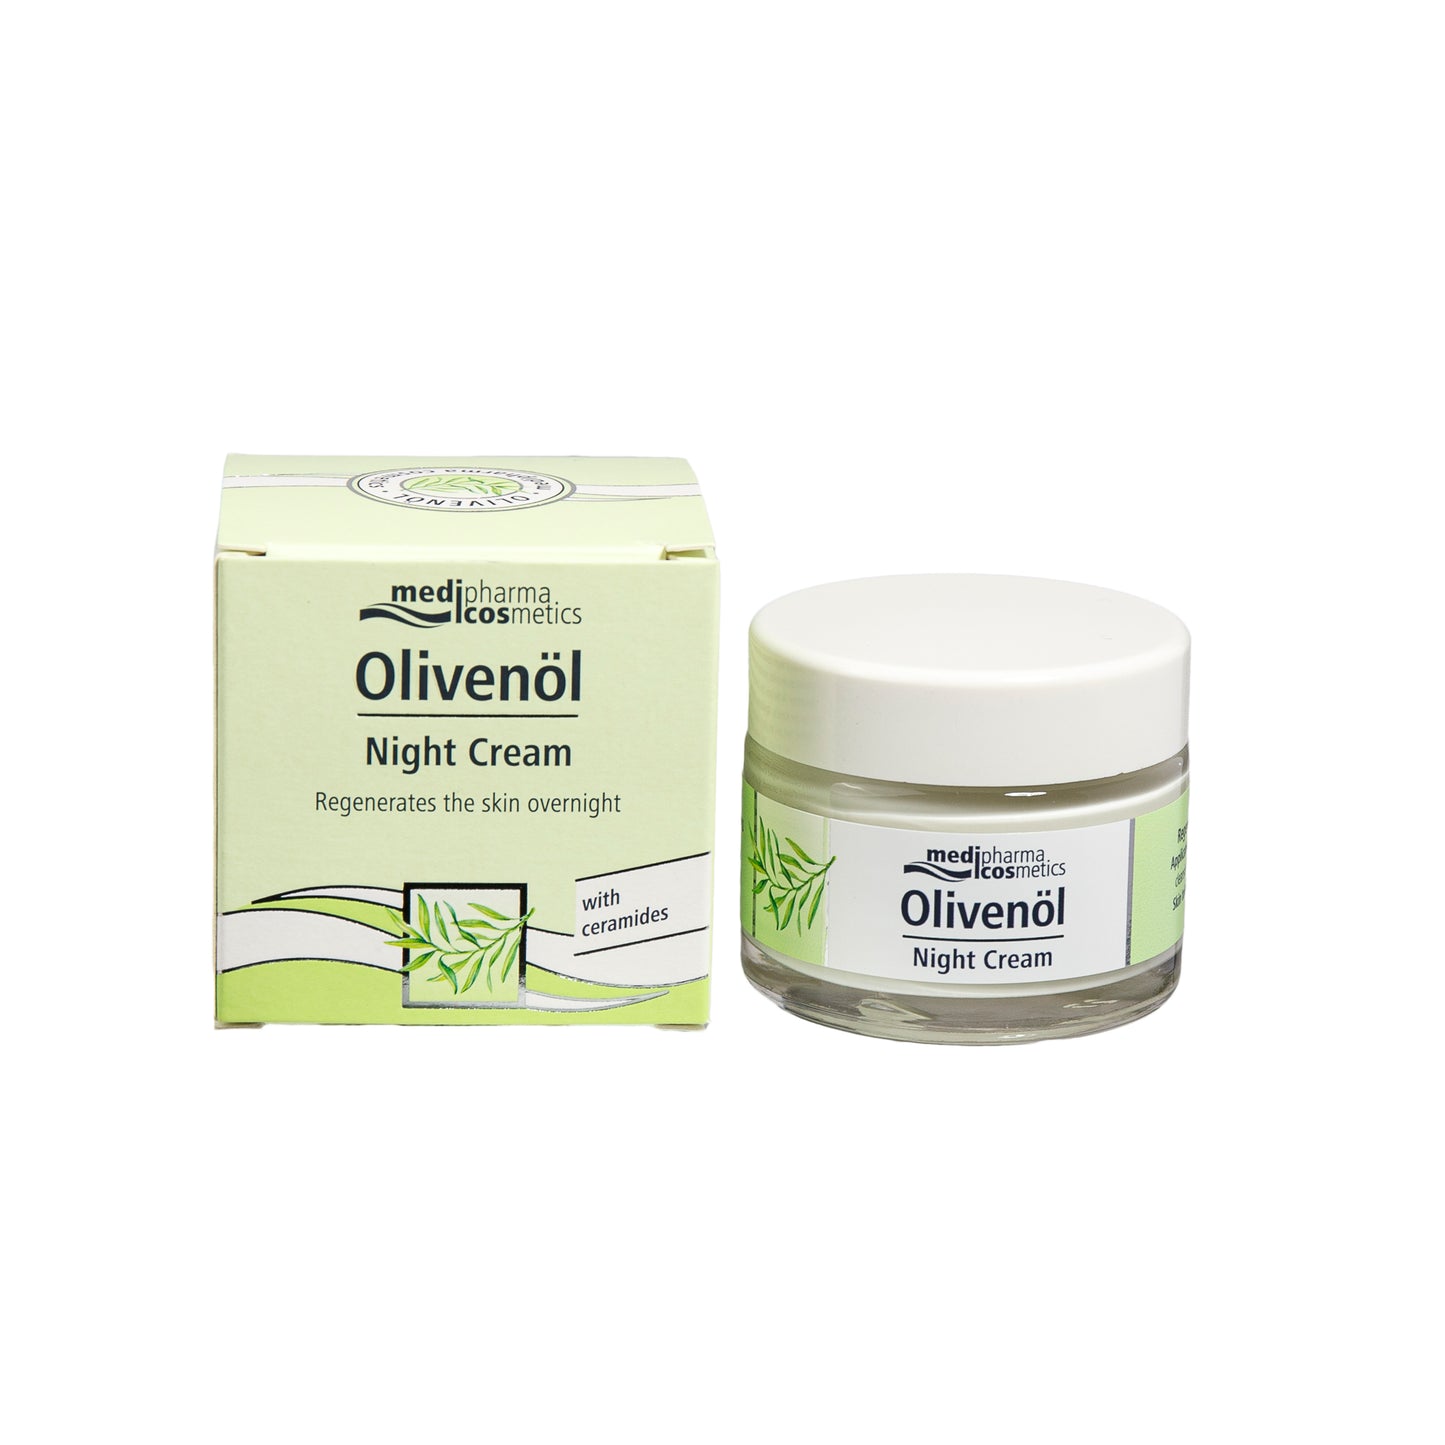 Primary Image of Olivenol Night Cream